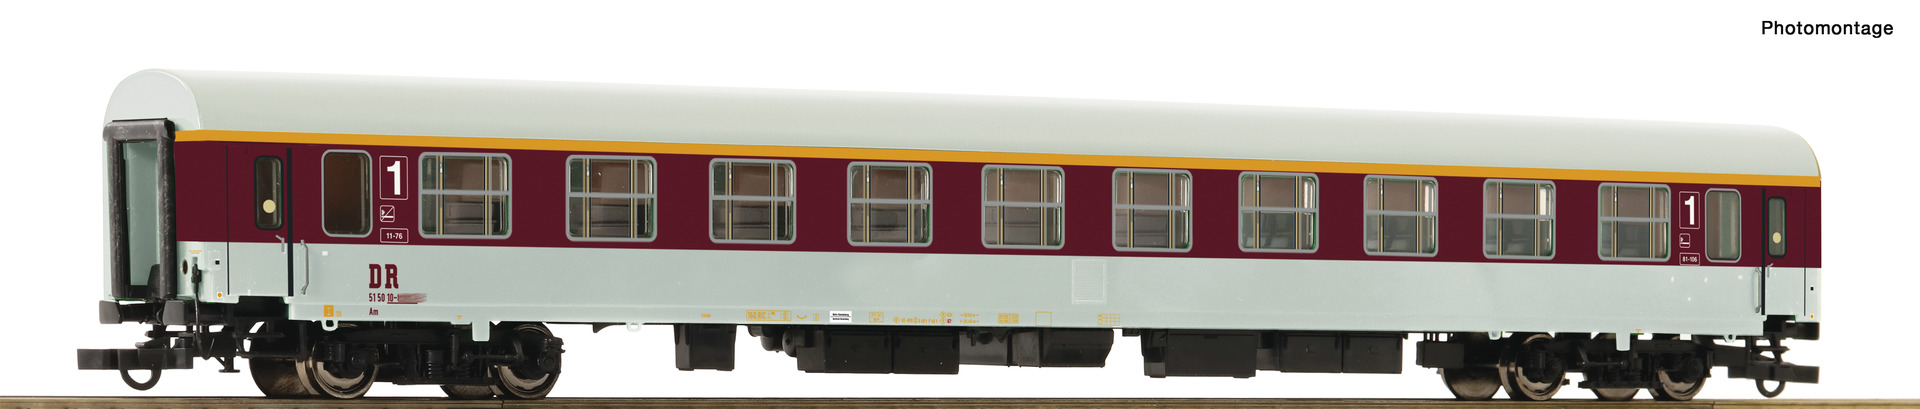 Artikel Bild: Roco 74816 Halberstädter-Schnellzugwagen 1. Klasse, Gattung Ame, der DR